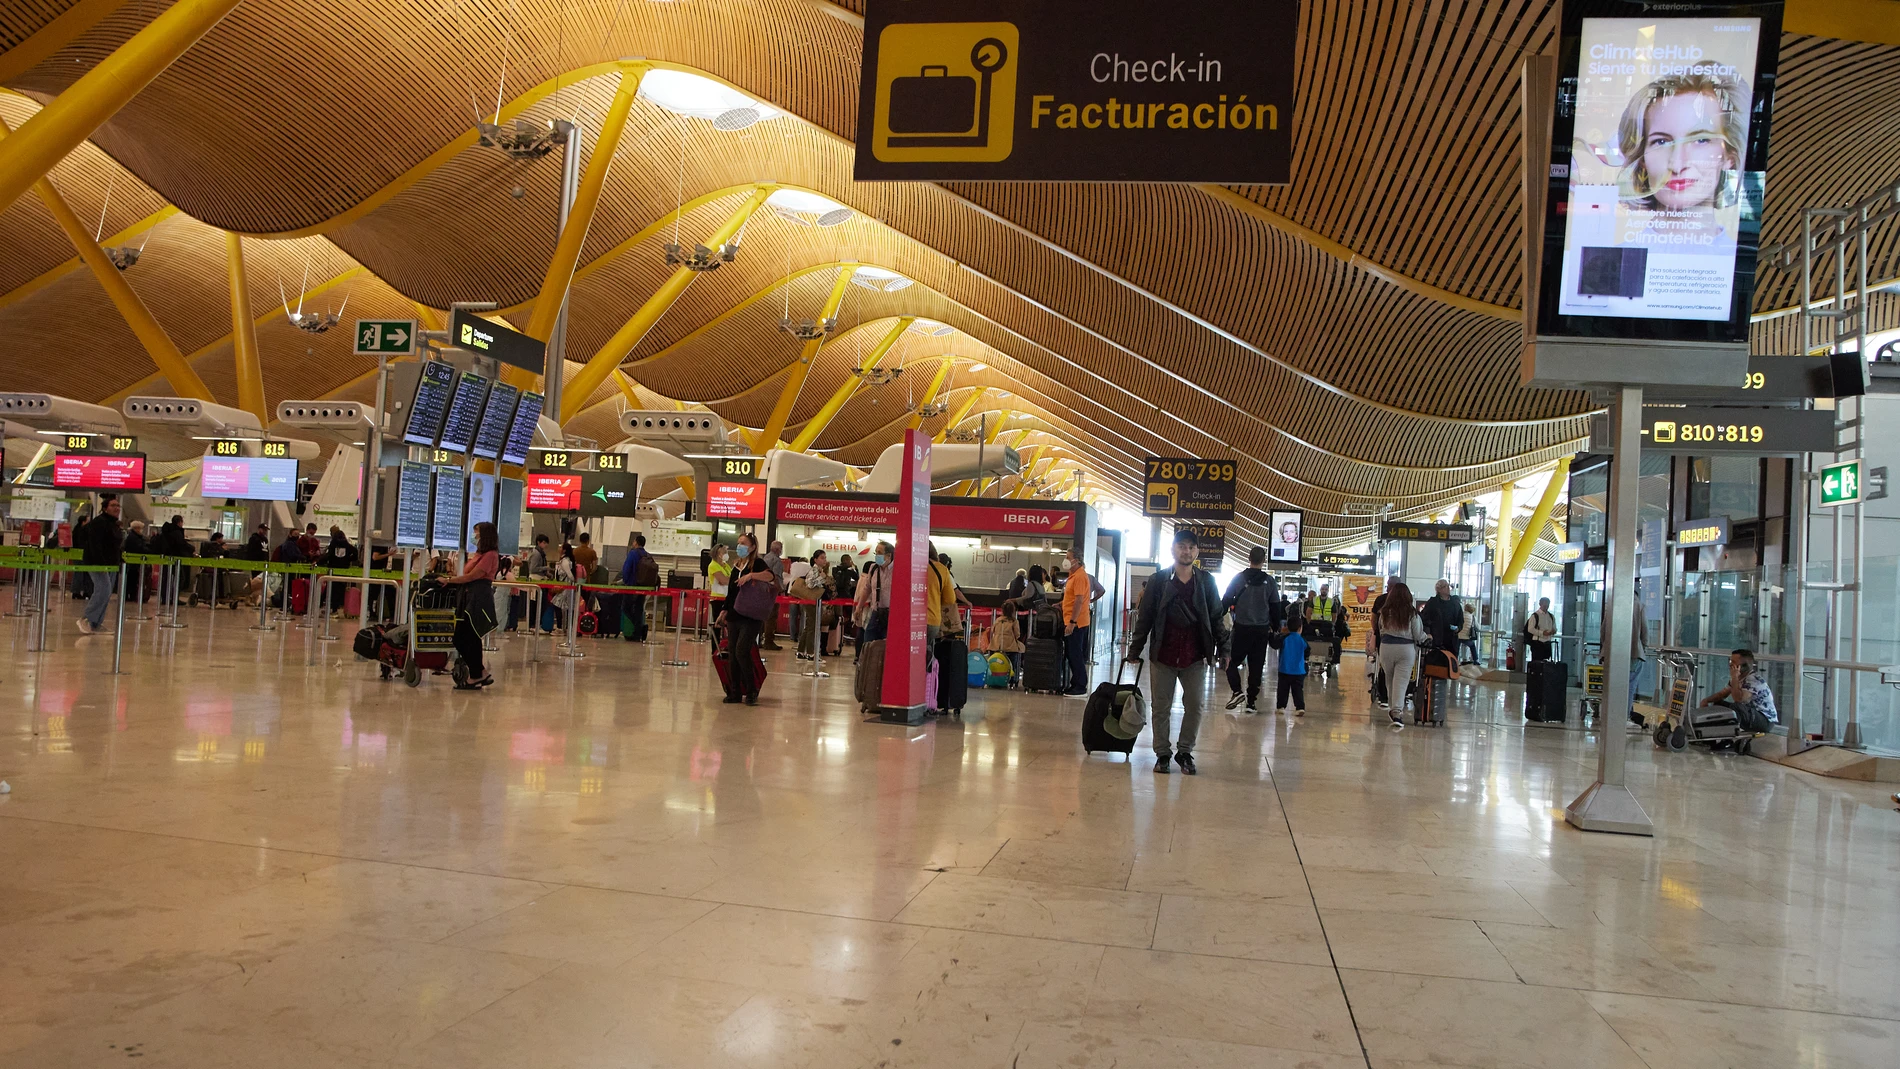 Pasajeros en la zona de facturación de la Terminal 4 del Aeropuerto Adolfo Suárez Madrid- Barajas